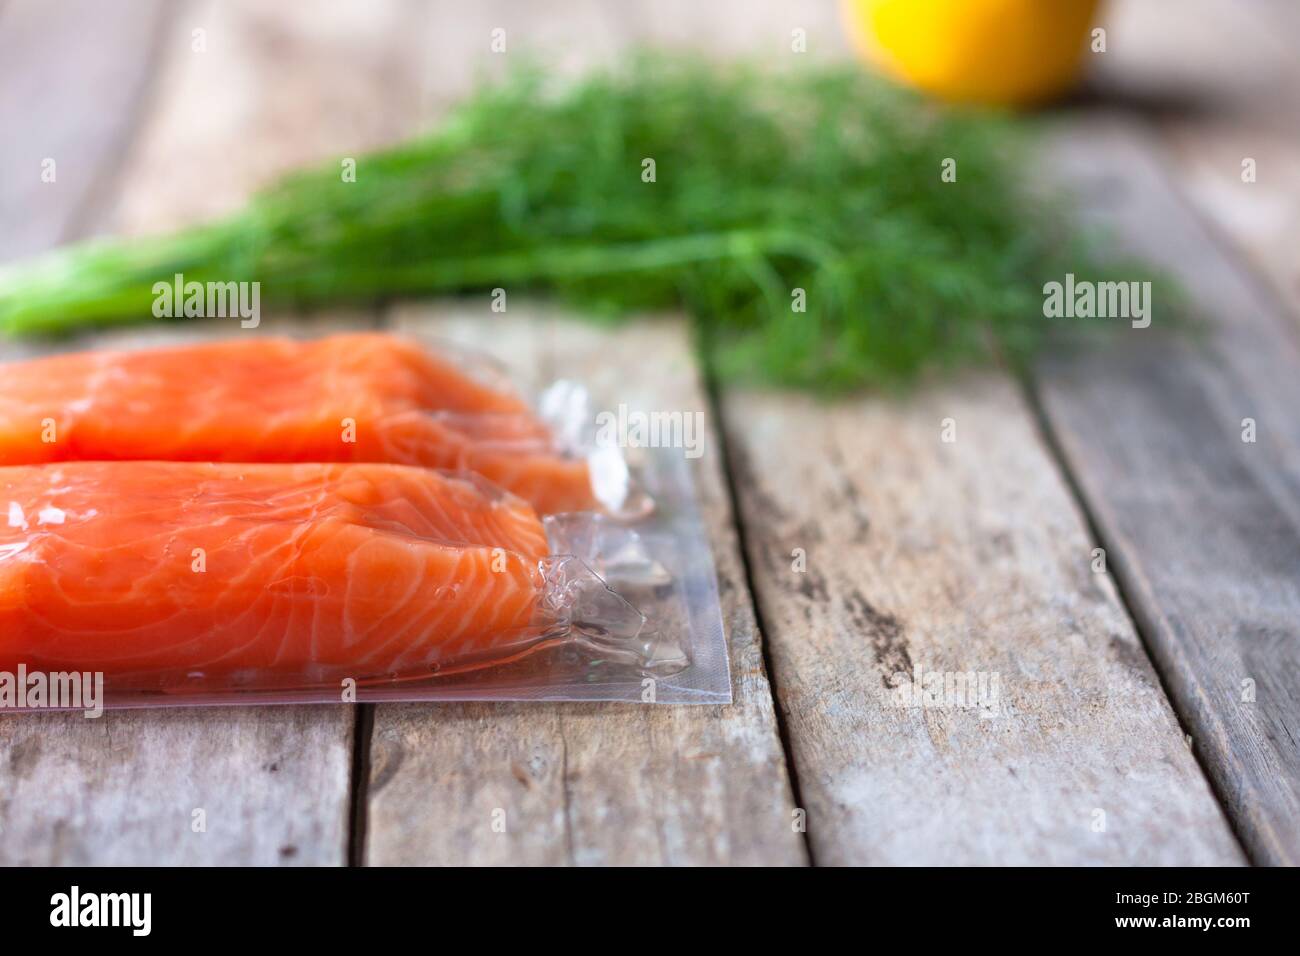 Filetti di pesce rosso o salmone su tavola di legno. Pesce fresco, limone e aneto per cucinare gli ingredienti. Omega-3. Messa a fuoco selettiva Foto Stock